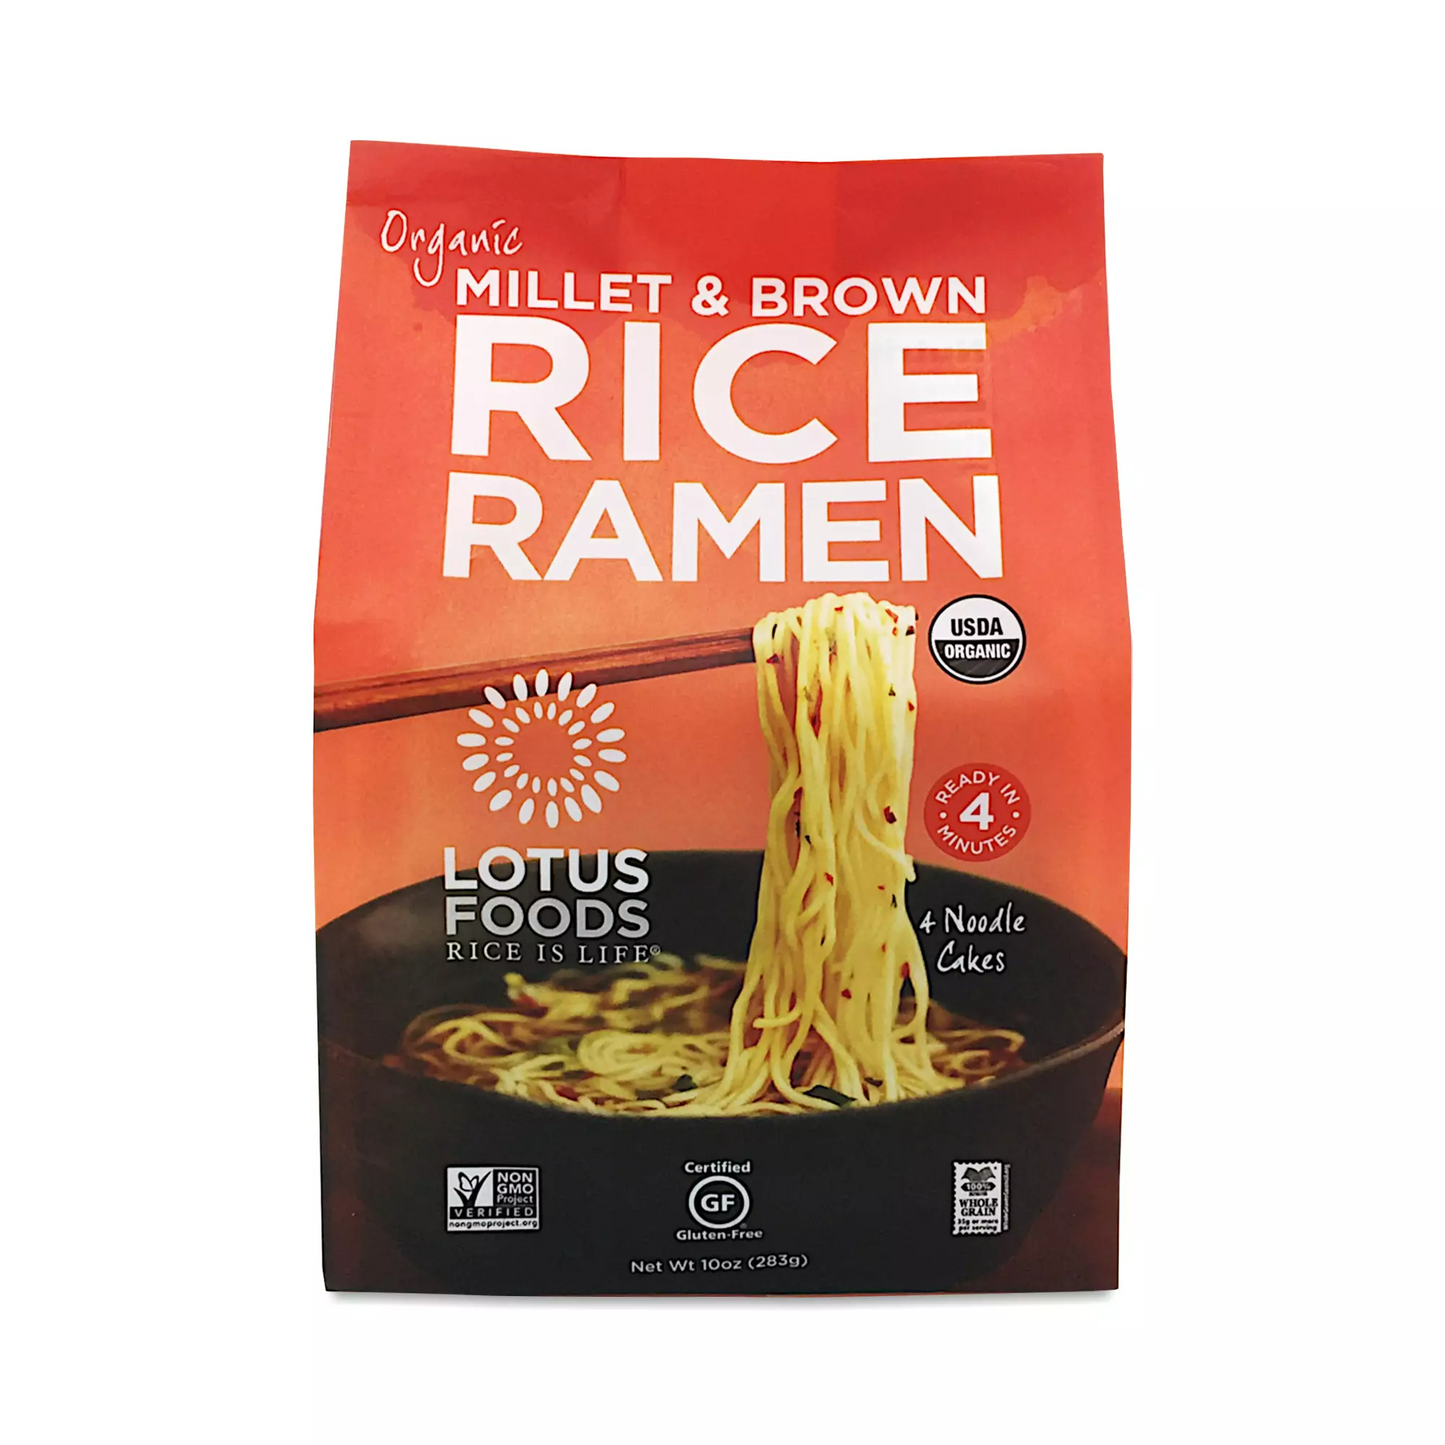 Organic Millet & Brown Rice Ramen 12-pack